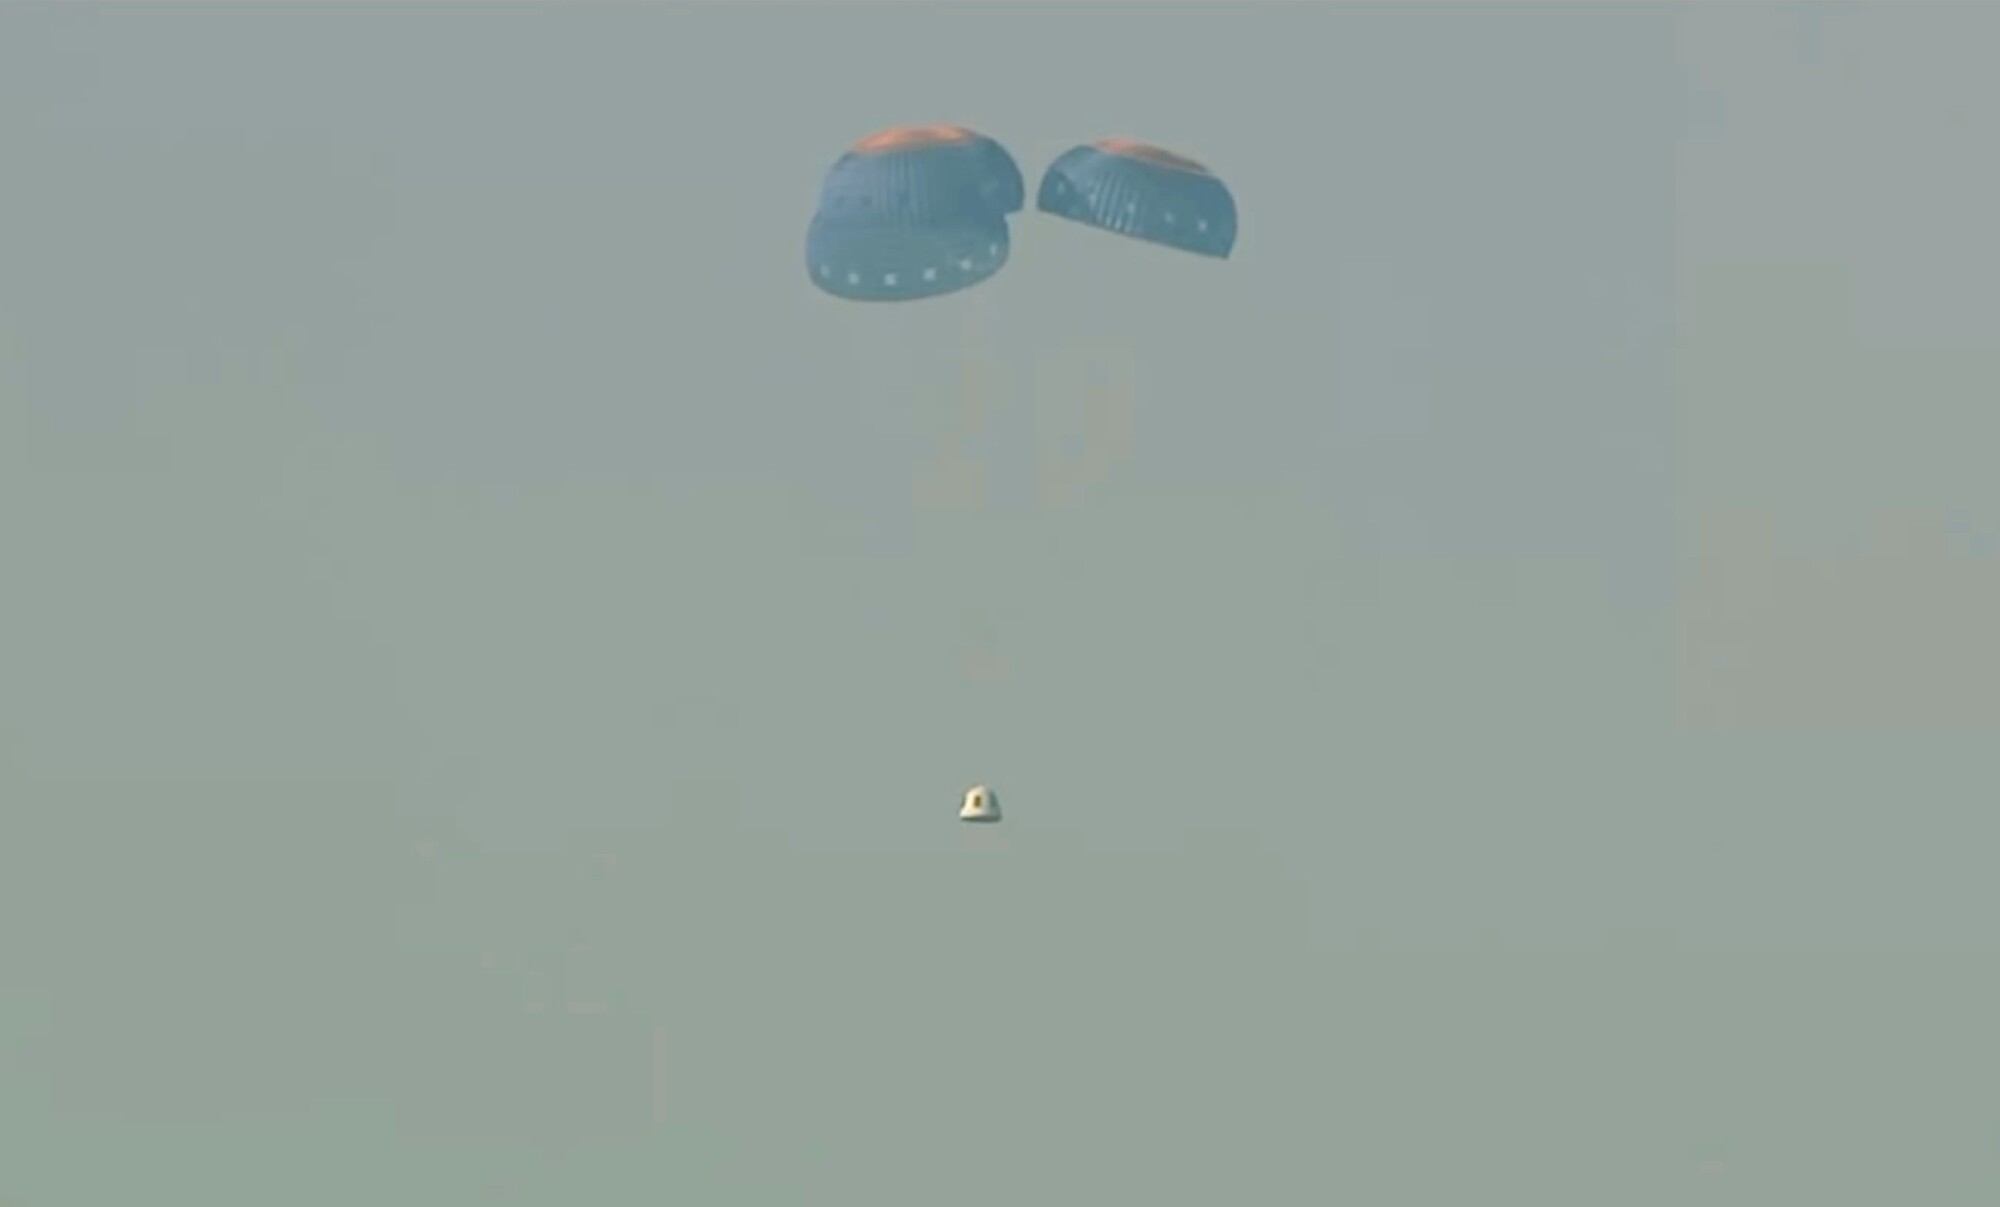 Rakete bez ľudskej posádky New Shepard spoločnosti Blue Origin zlyhal motor. Modul s experimentálnym materiálom a bez ľudskej posádky pristáva pomocou padákov v púšti po nevydarenom štarte. (12. september 2022)